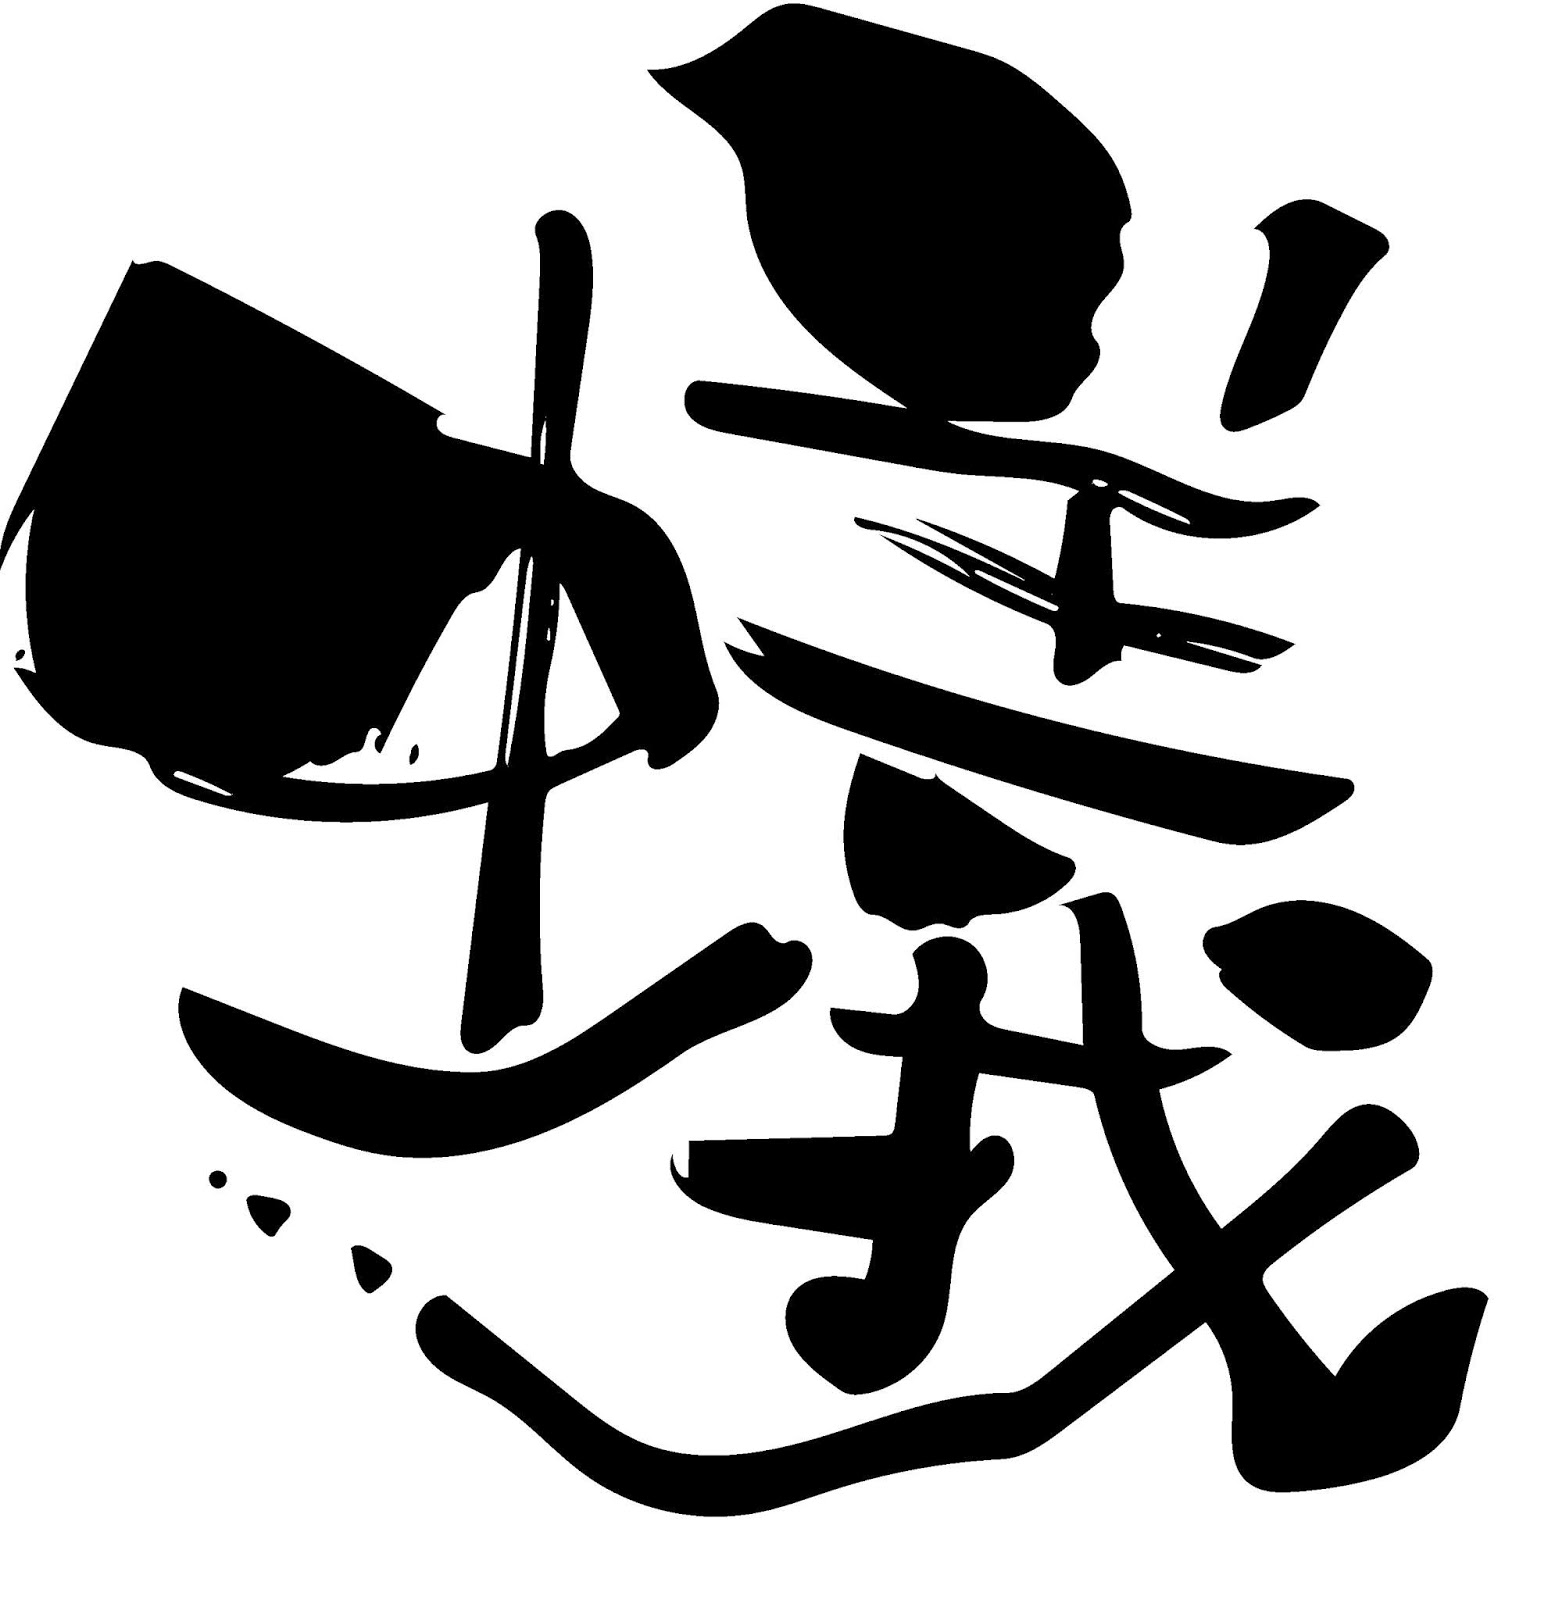 無料 会員登録なし 商用可素材 イラストr 蟻 漢字 文字 イラスト